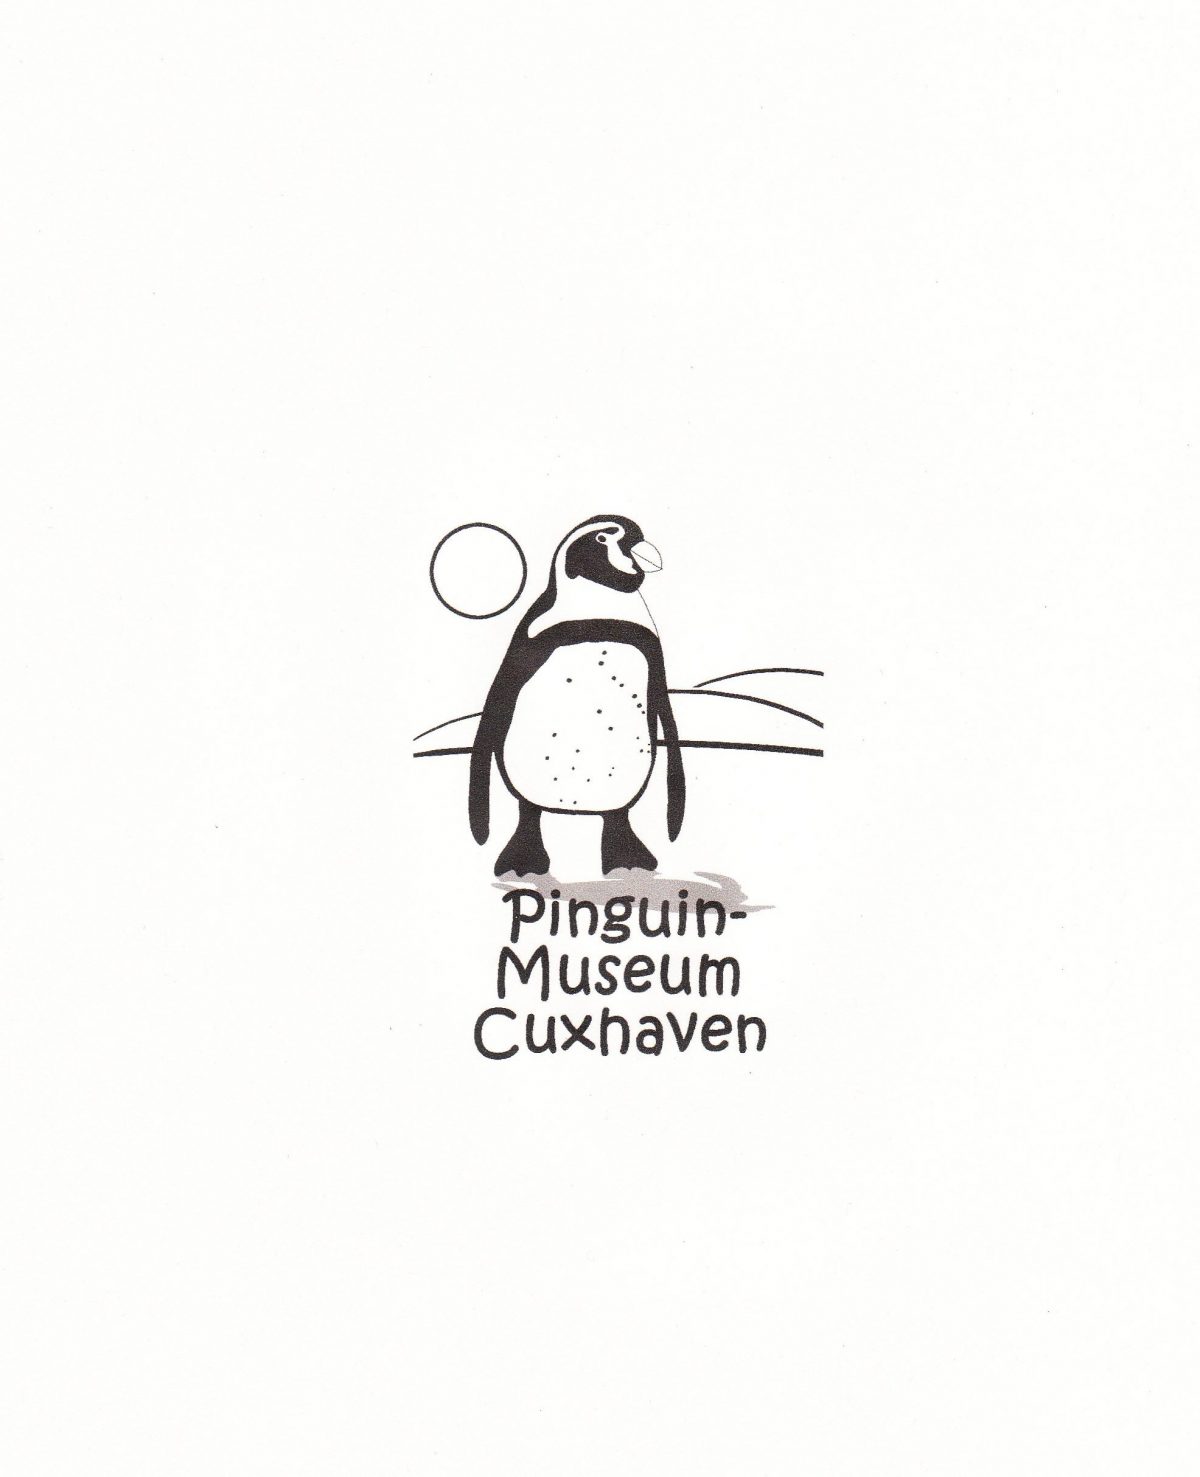 Pinguin-Museum